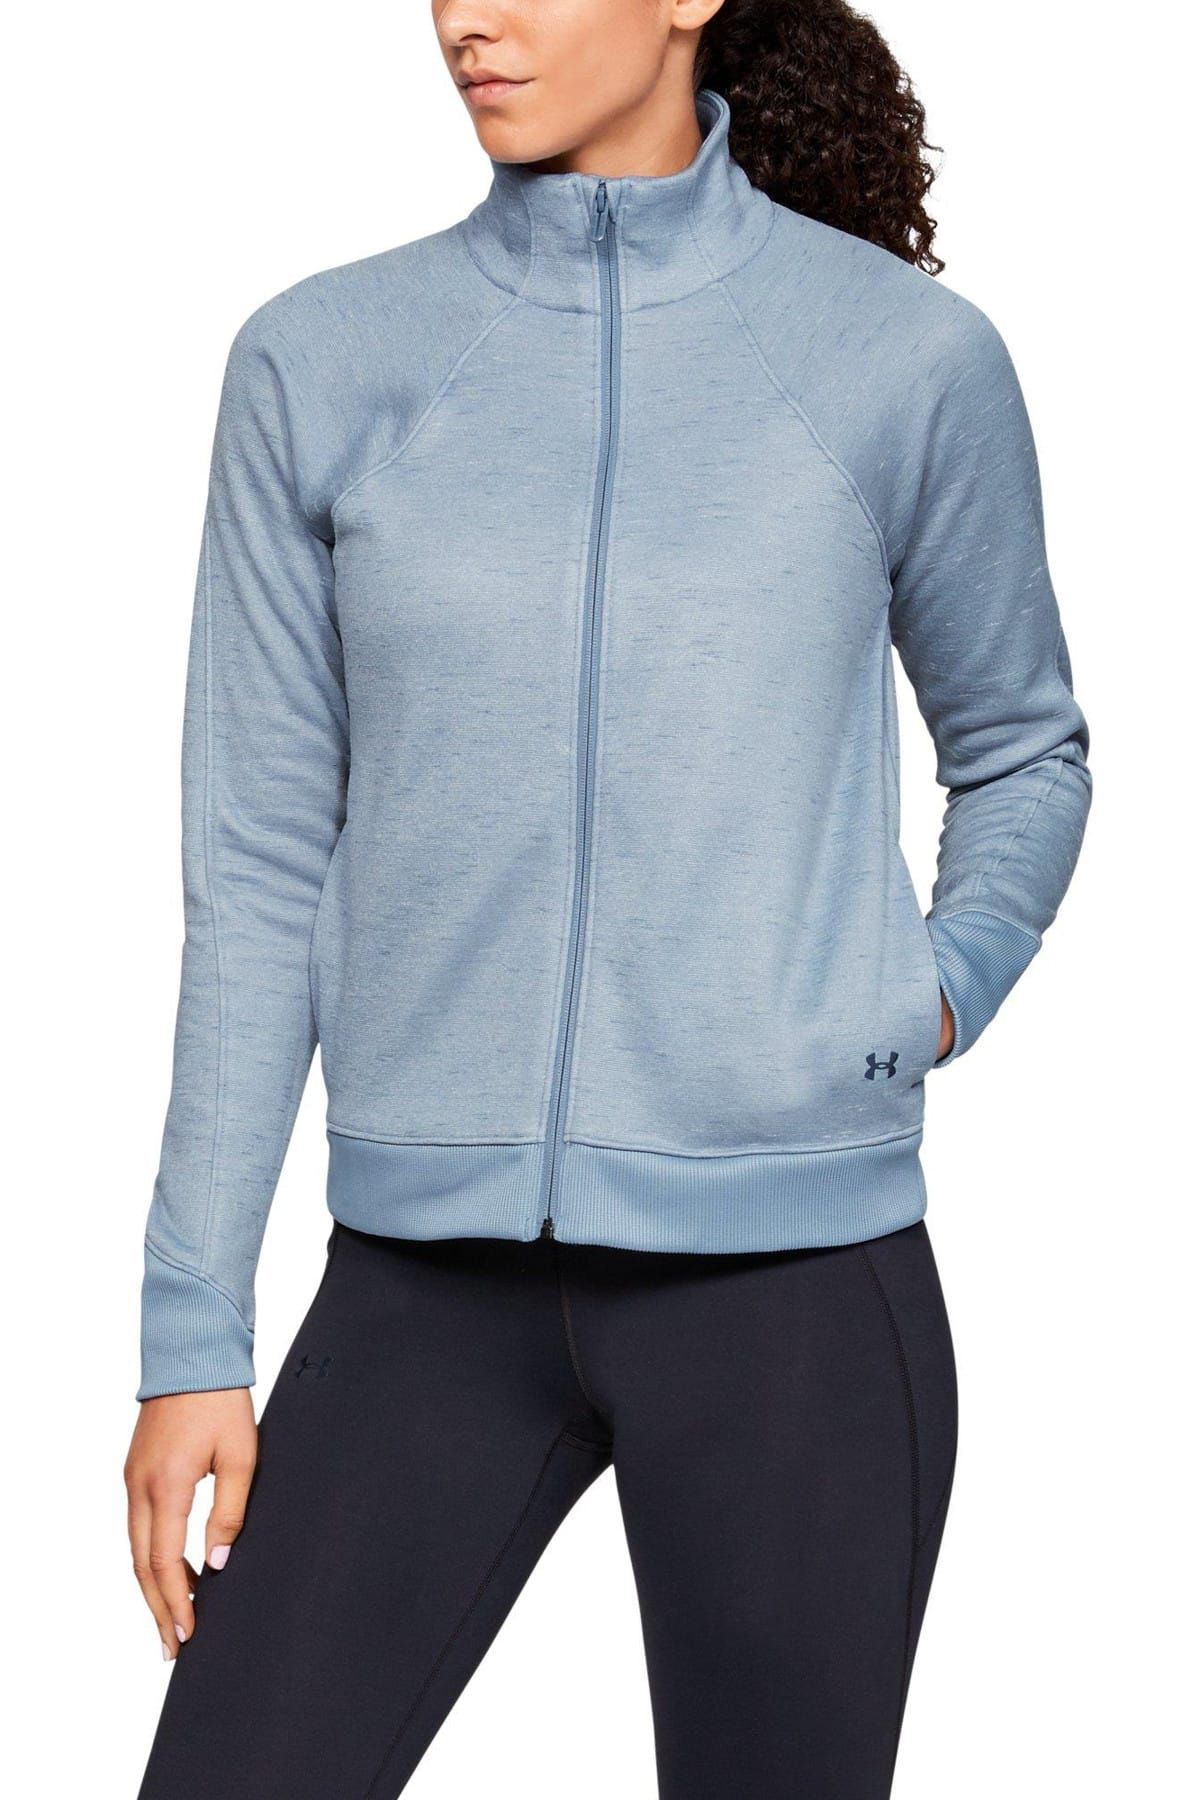 Kadın Spor Sweatshirt - SYNTHETIC FLEECE FULL ZIP - 1317892-420